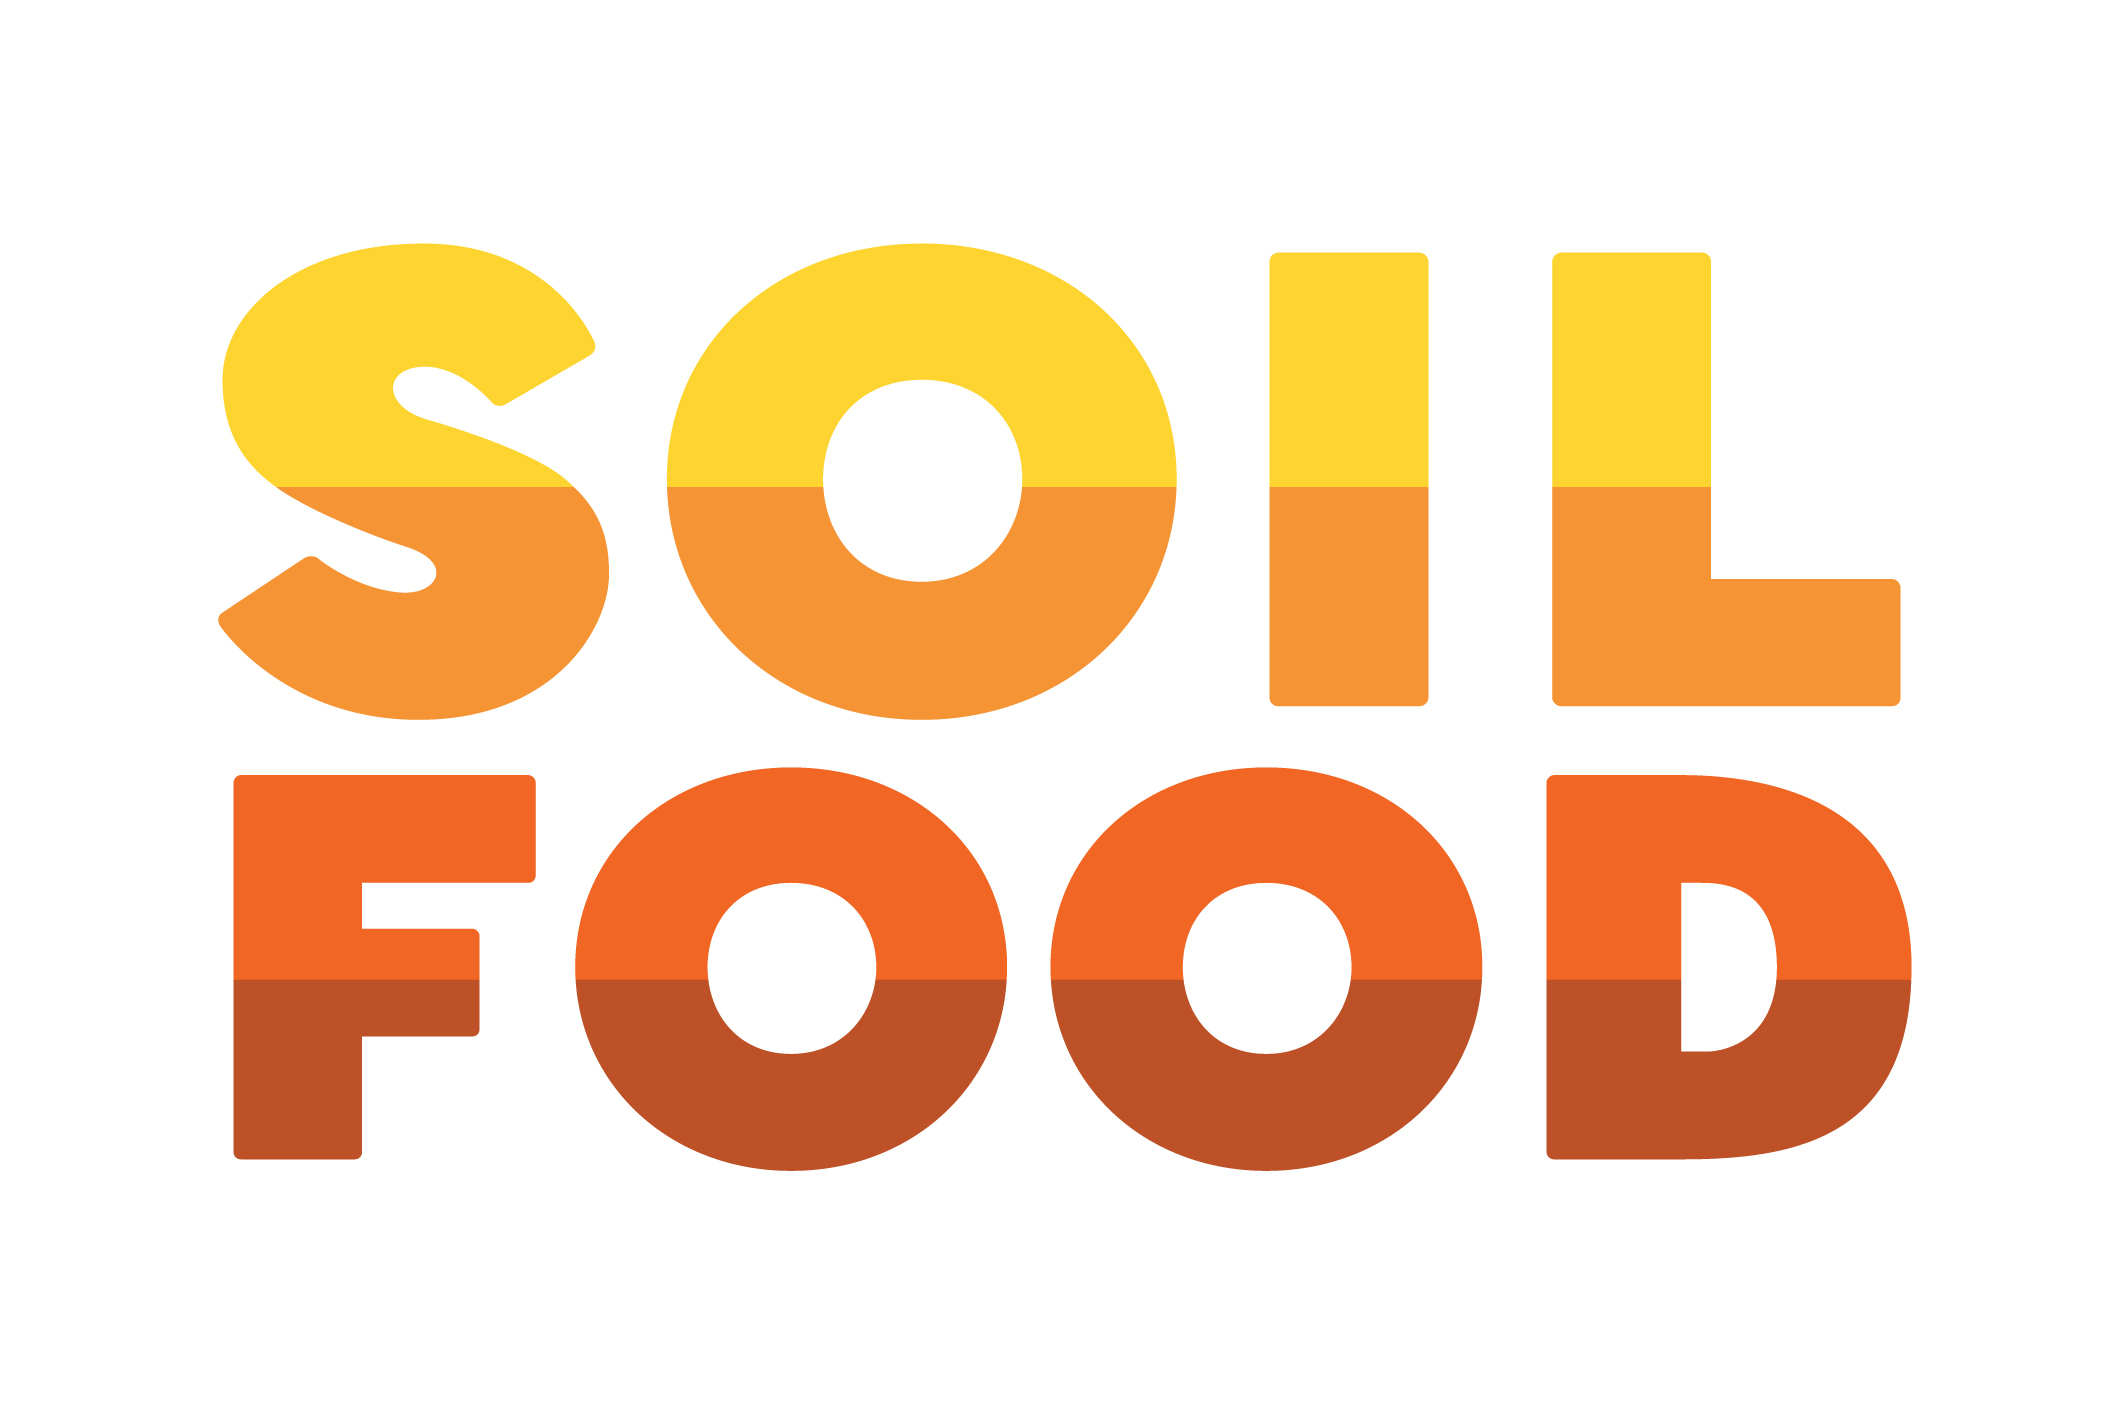 Soilfood